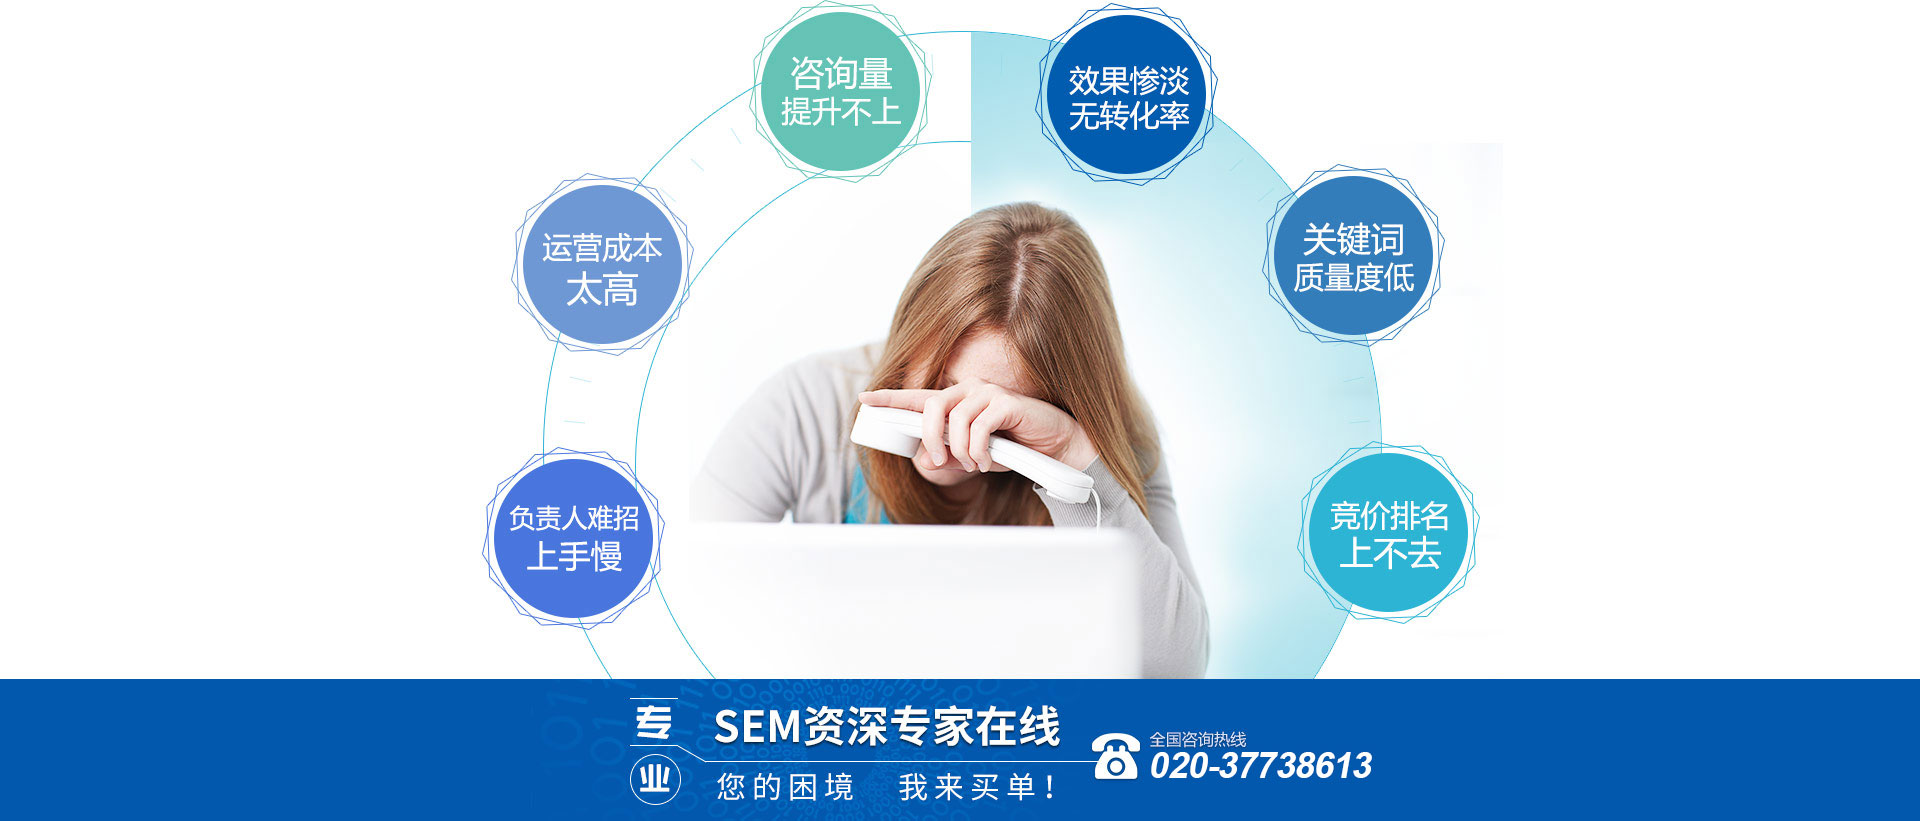 广州SEM竞价账户托管外包公司帮你处理各种优化难题